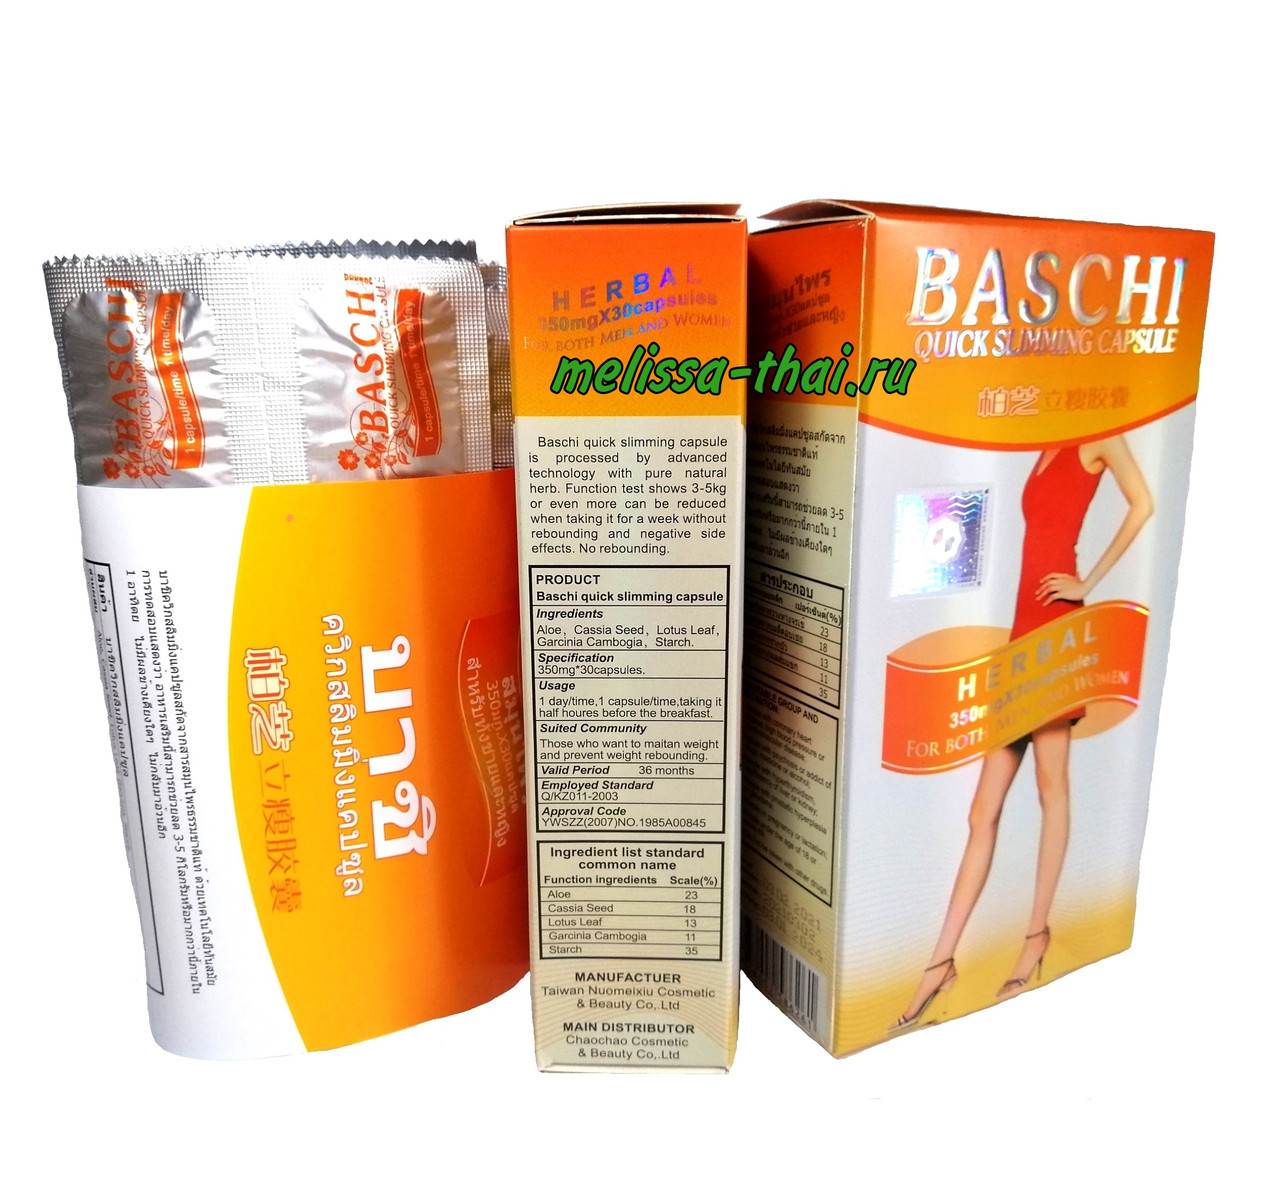 Баши Капсулы для быстрого похудения Baschi Orange Box Quick Slimming Capsule 350 mg х 30 шт, Таиланд